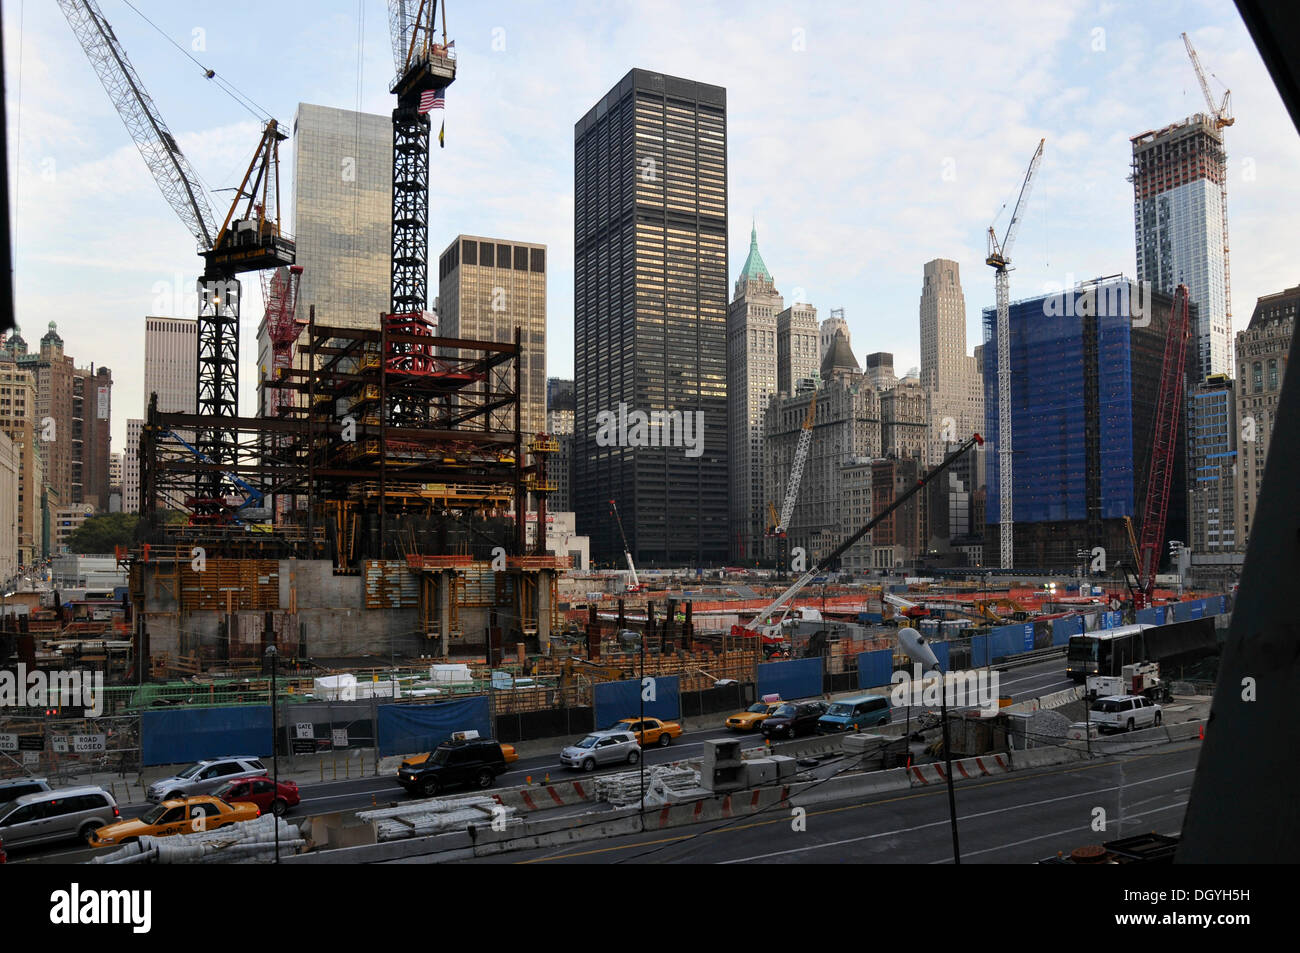 Wtc, world trade center, site de construction, financial district, new york, en Amérique du Nord, Etats-Unis Banque D'Images